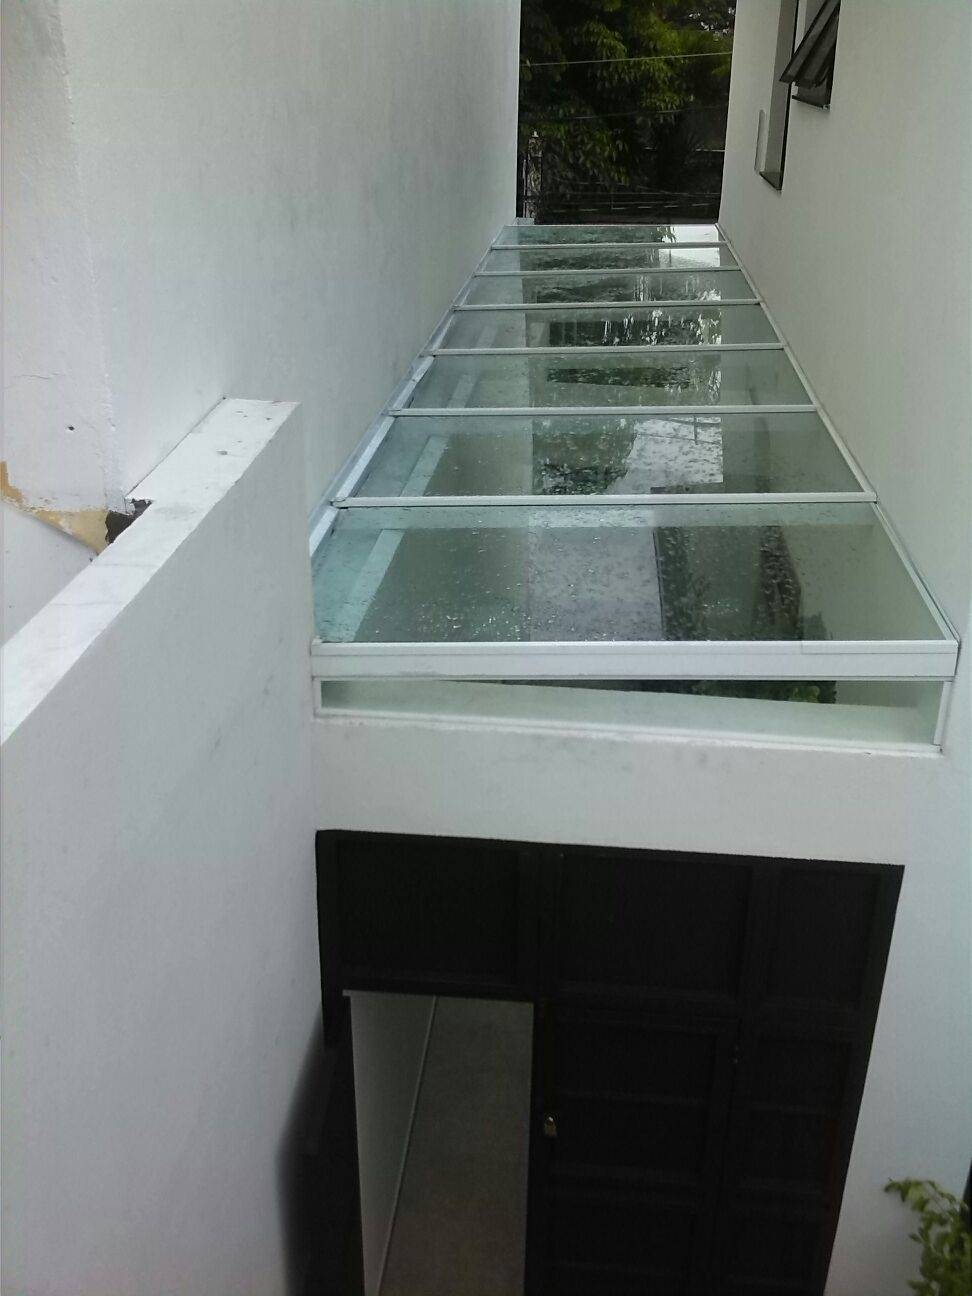 Cobertura de Vidro Temperado Preço em Aricanduva - Cobertura de Vidro para Garagem